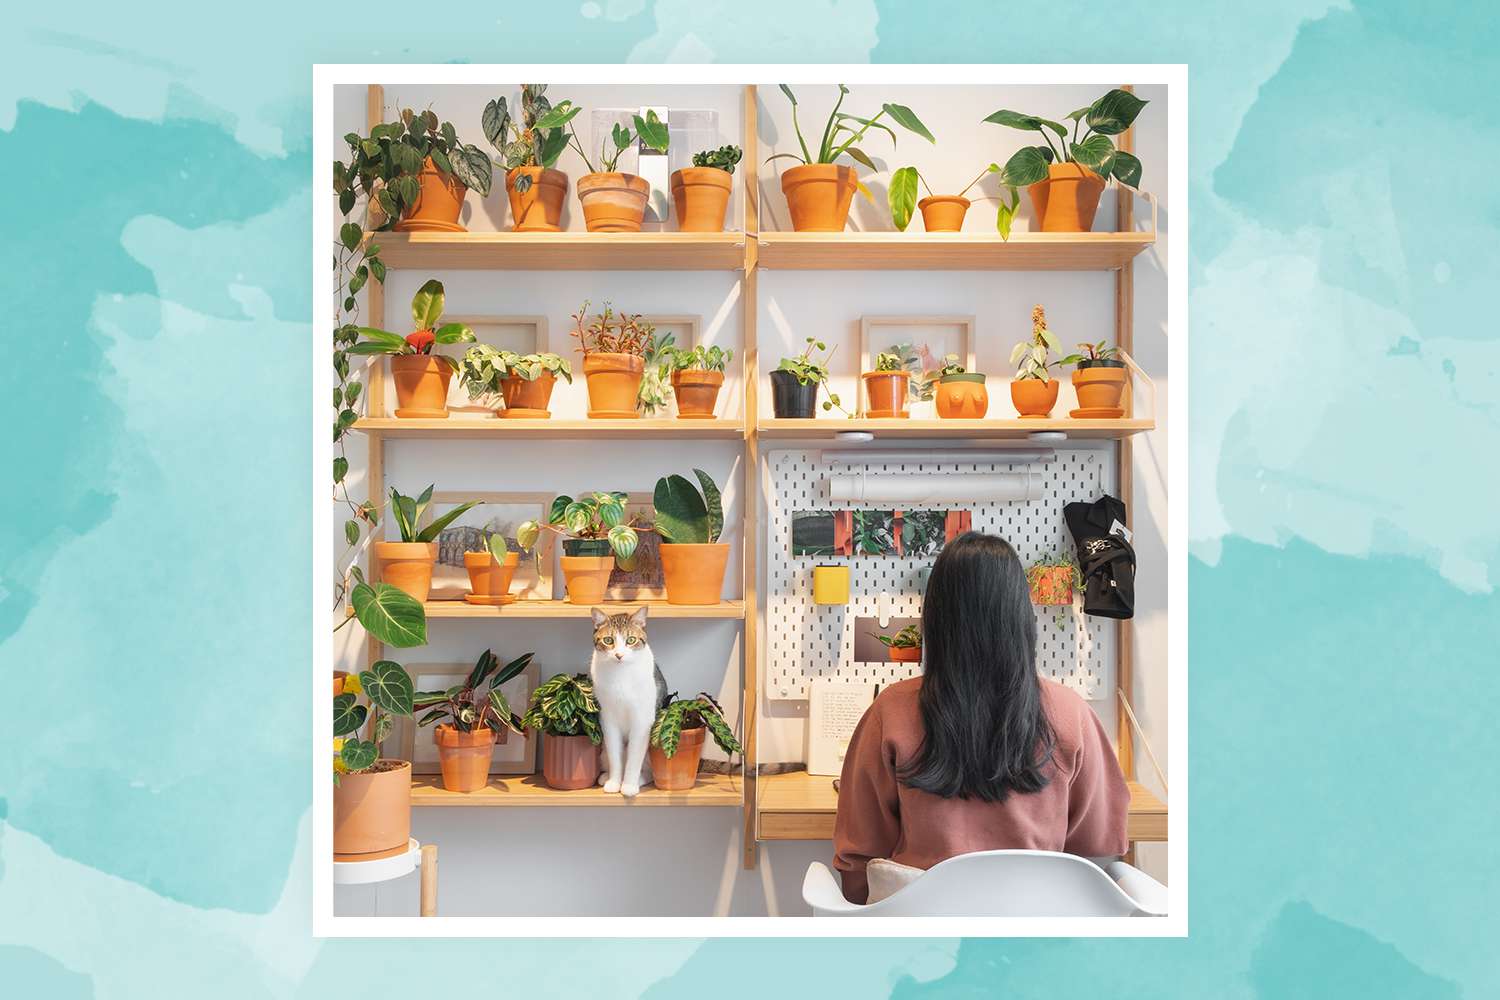 Vionna Wai, fondatrice de @FelineJungle, travaille près de son mur de plantes dans son espace de travail à domicile